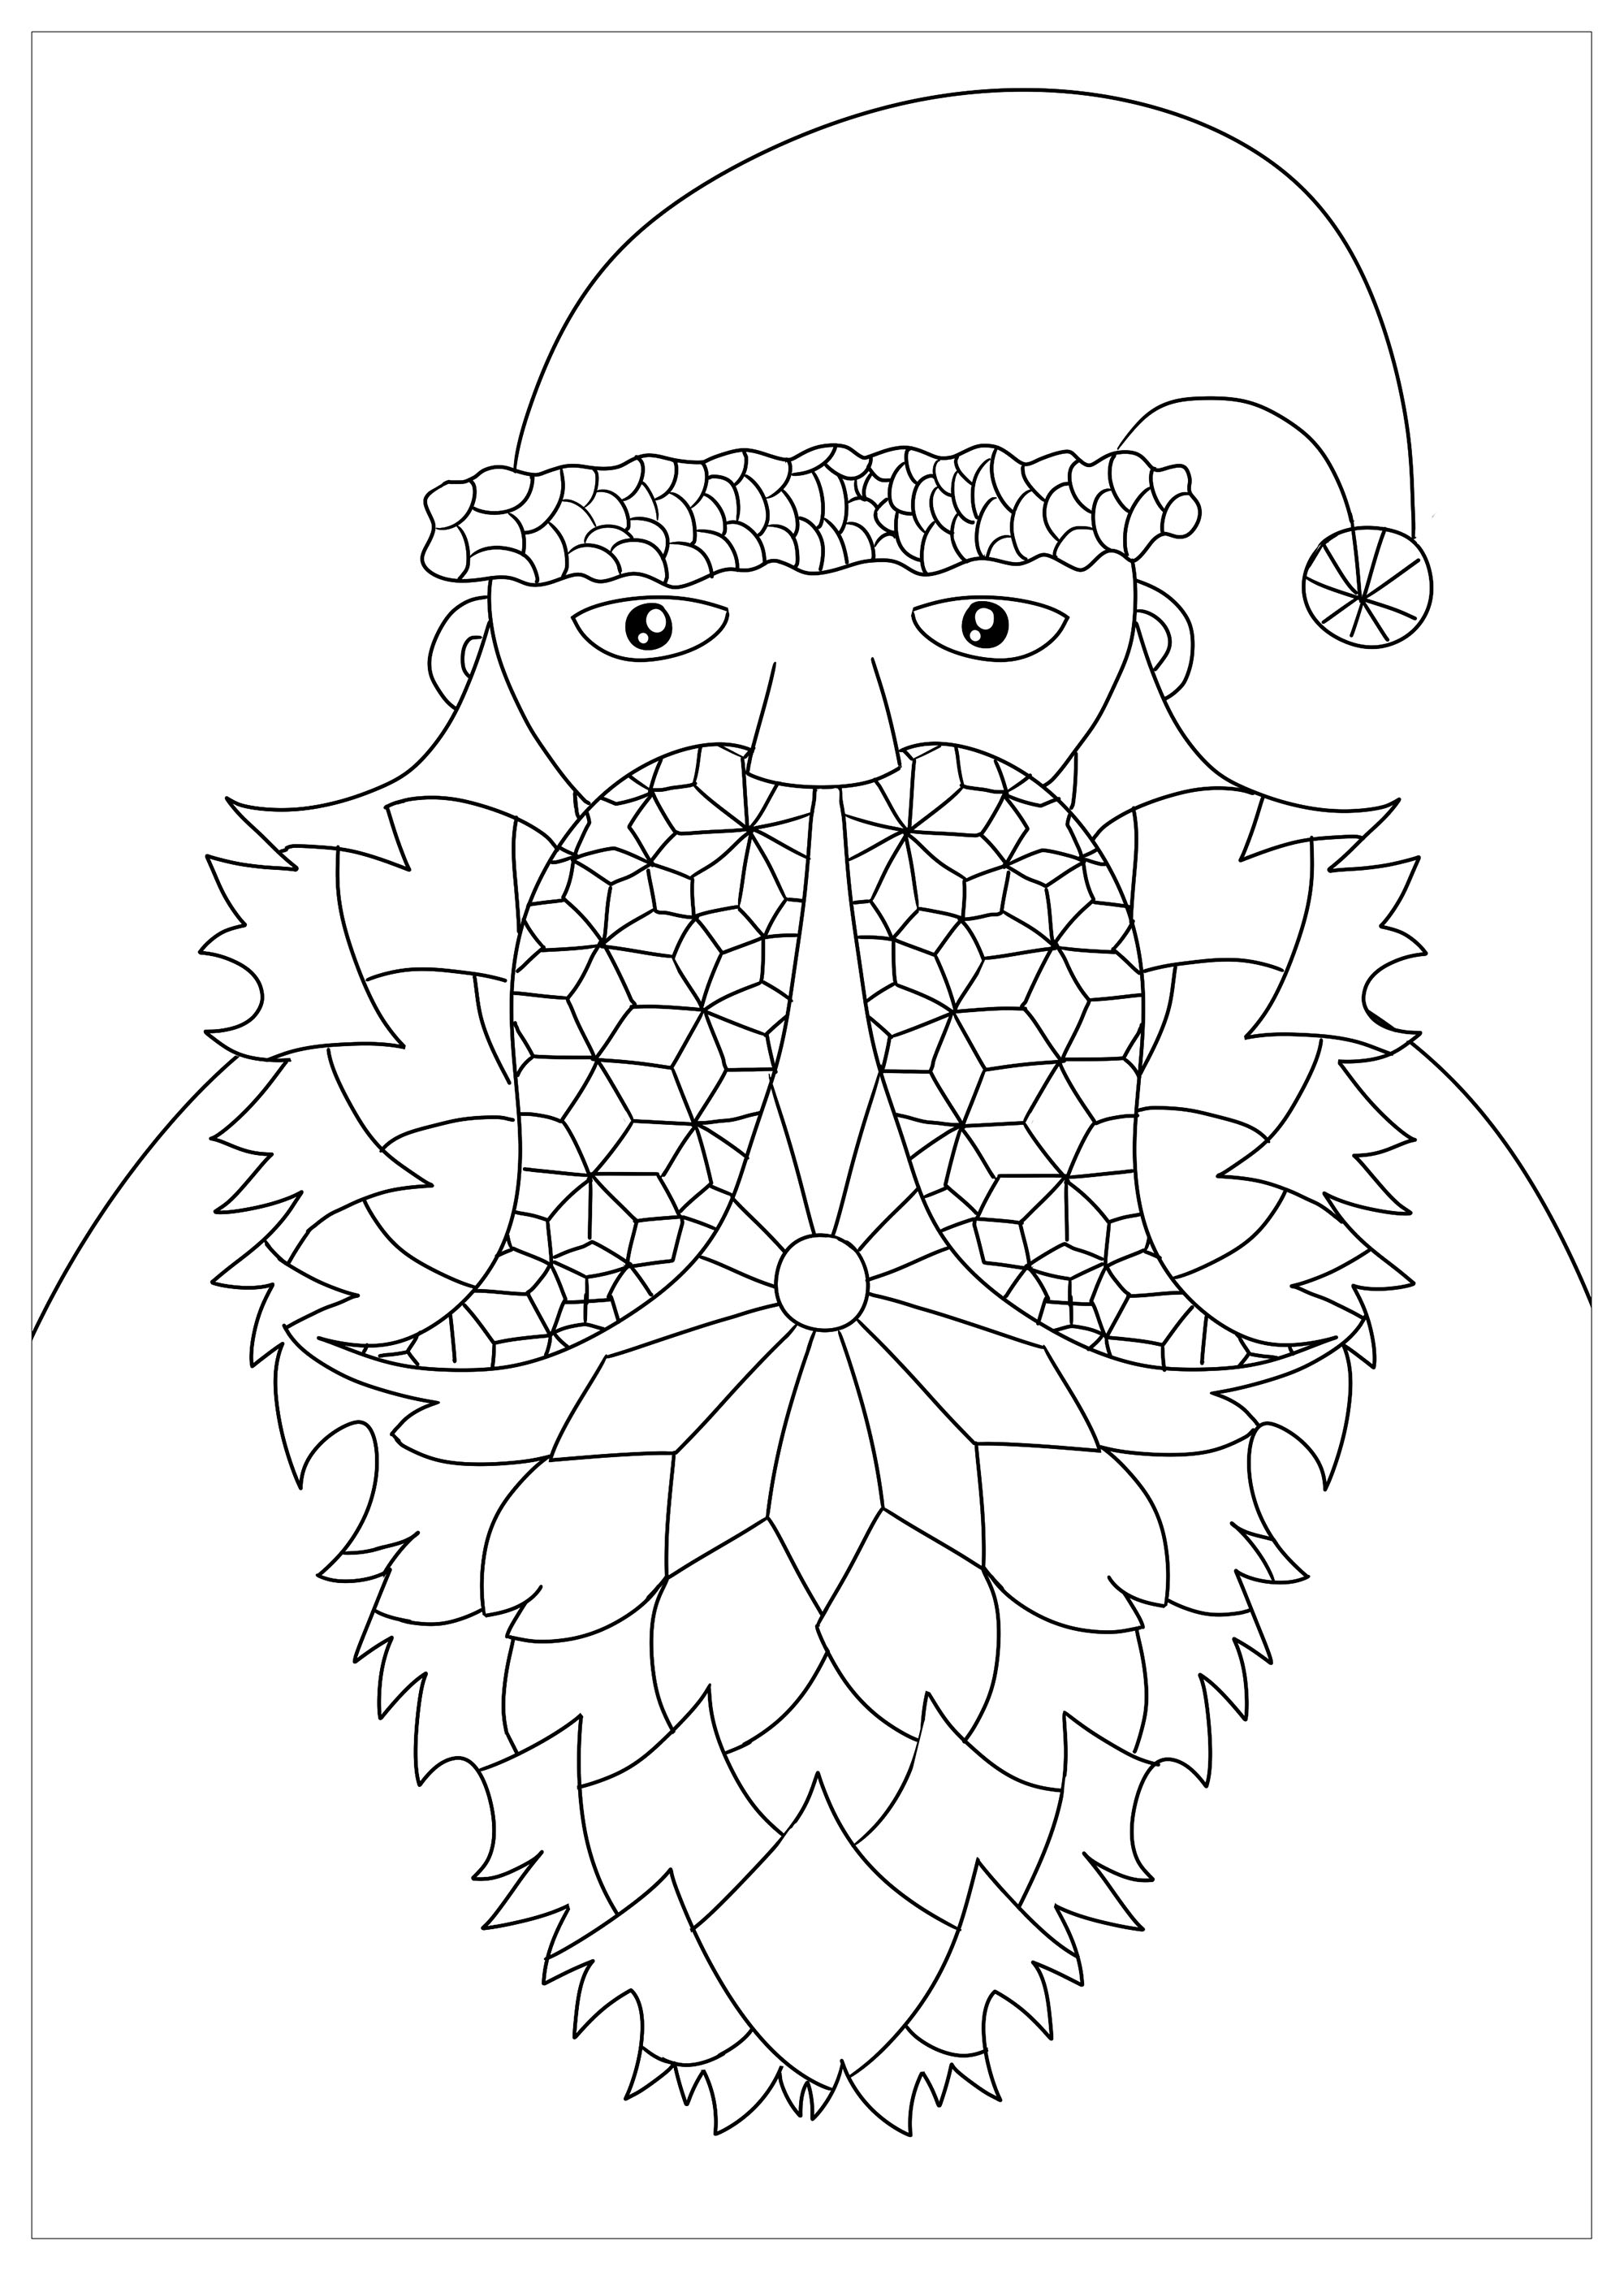 Santa Claus with beautiful beard, Artist : Ji. M